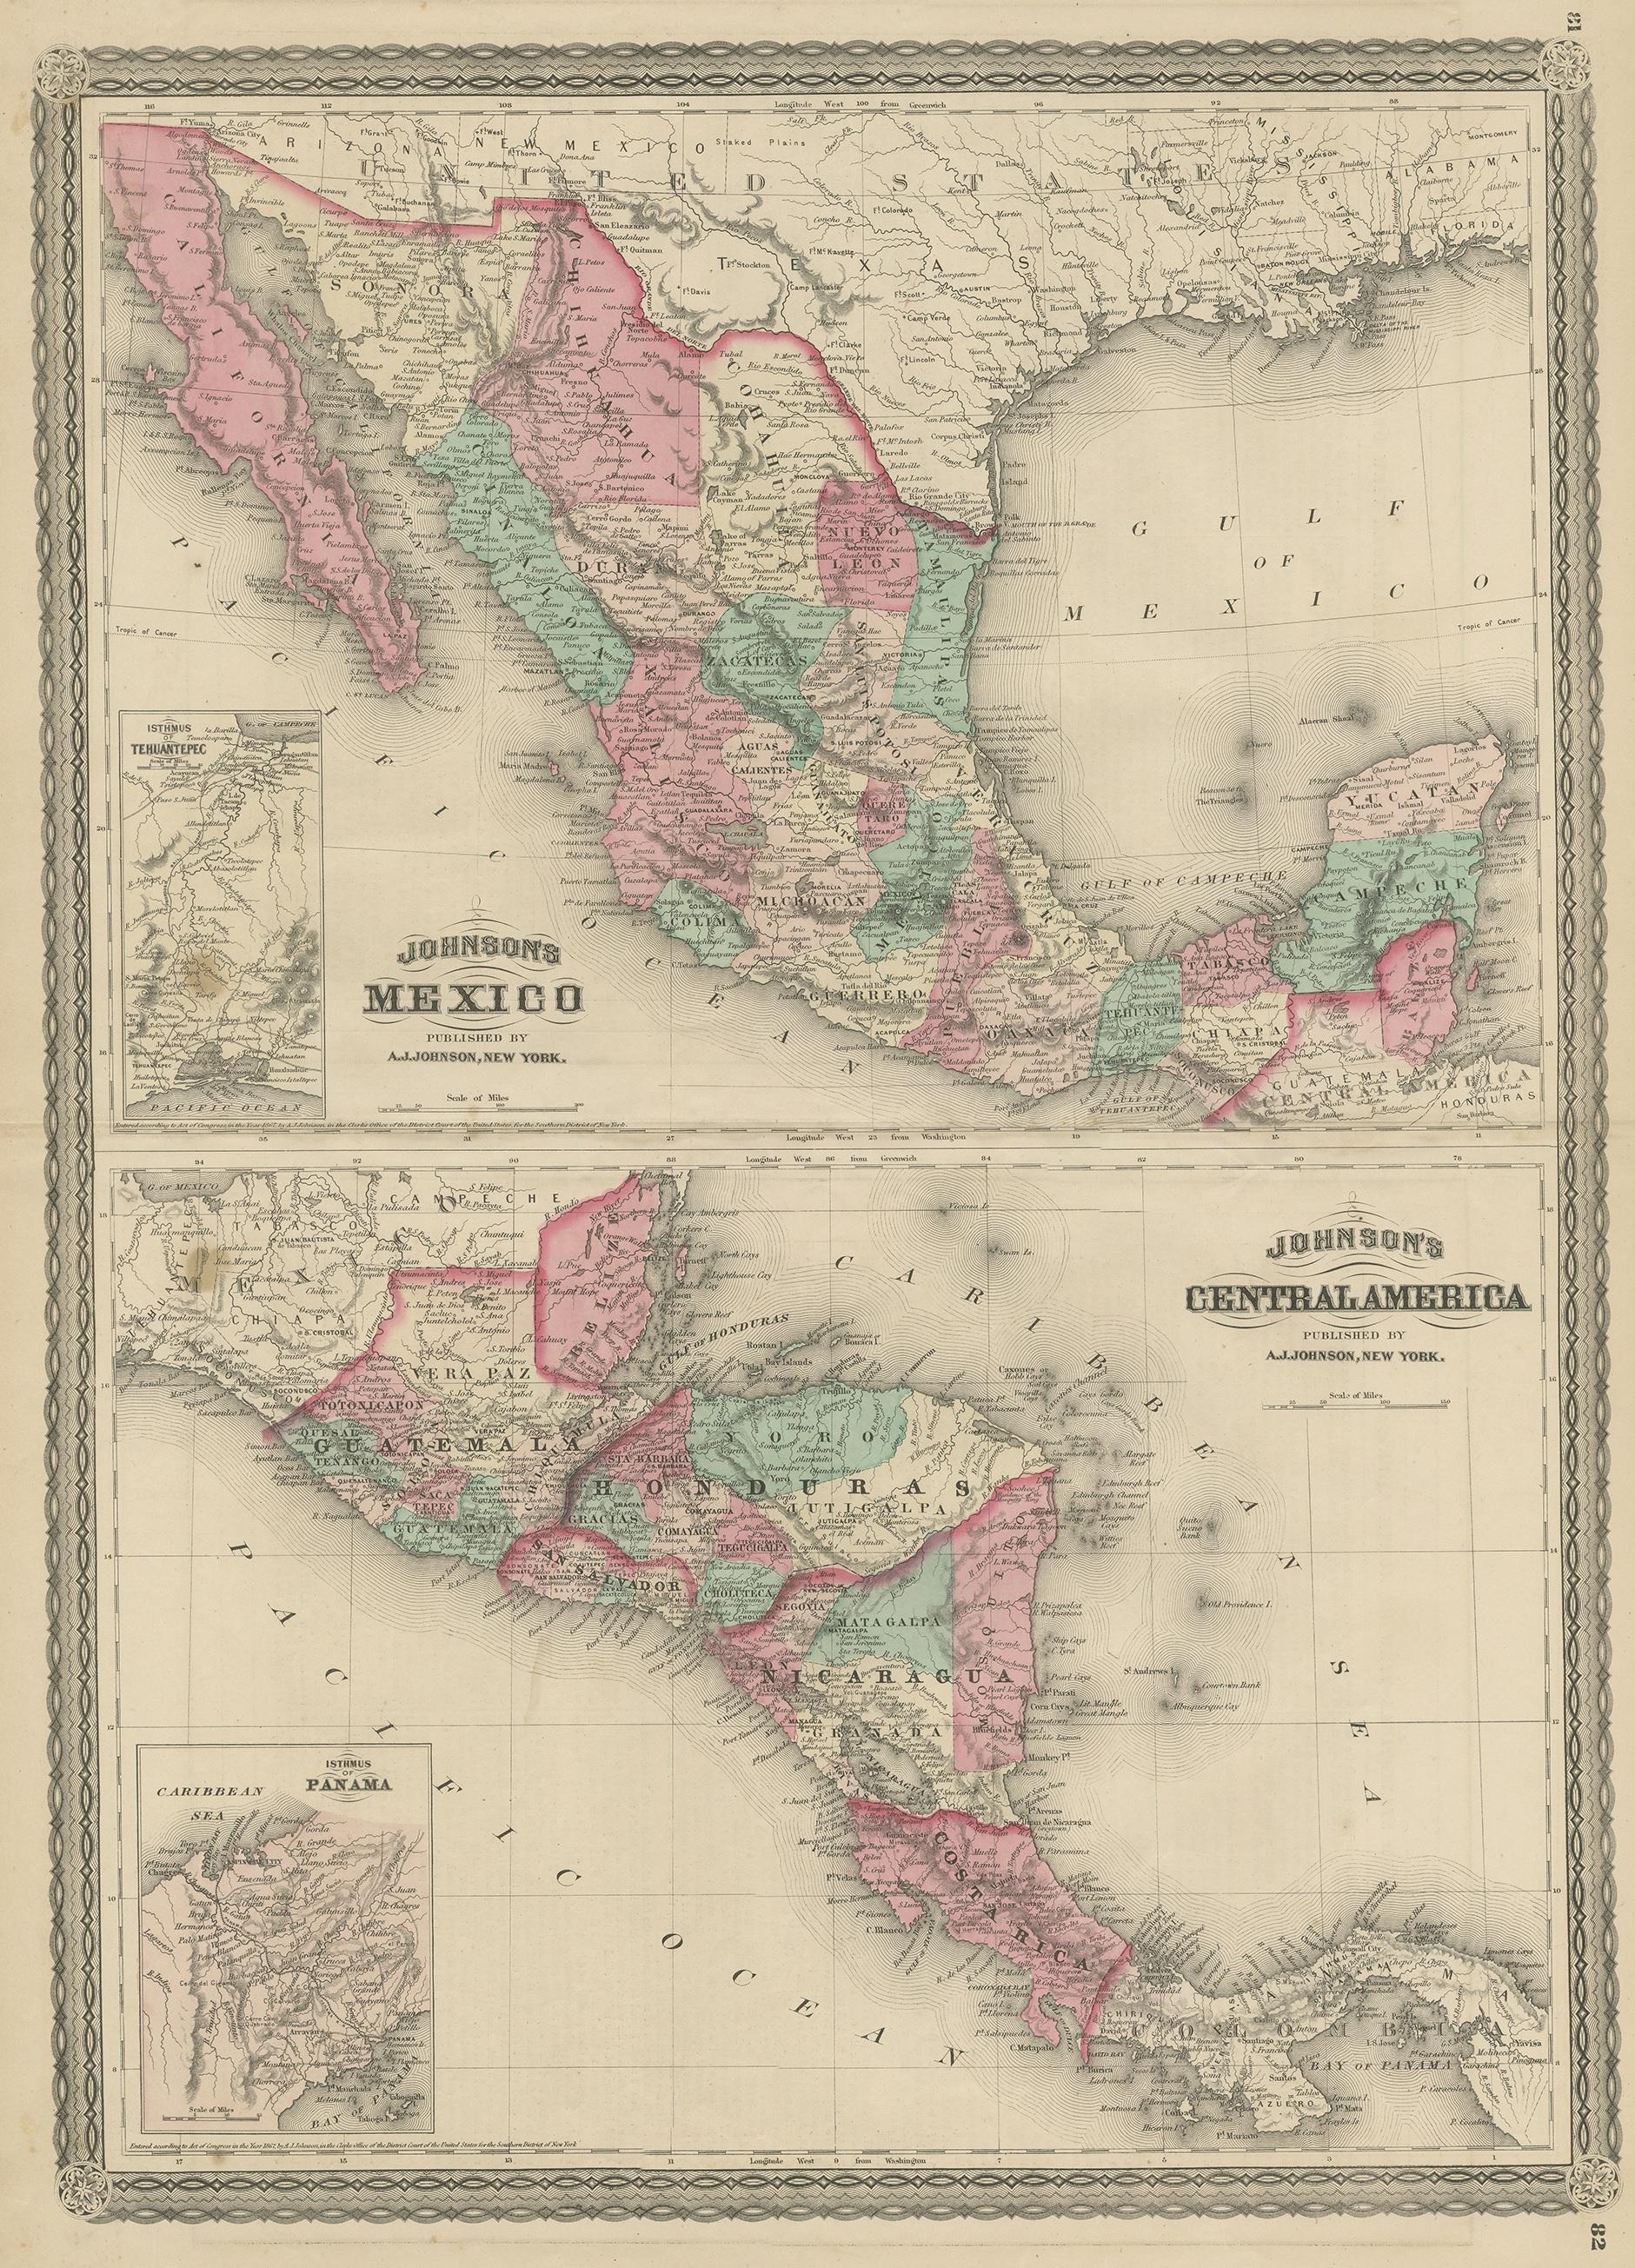 Antike Karte mit dem Titel 'Johnson's Mexico (..)'. Zwei Karten auf einem Blatt, die Mexiko und Zentralamerika zeigen, mit Einlegekarten von Tehuantepec und Panama. Diese Karte stammt aus 